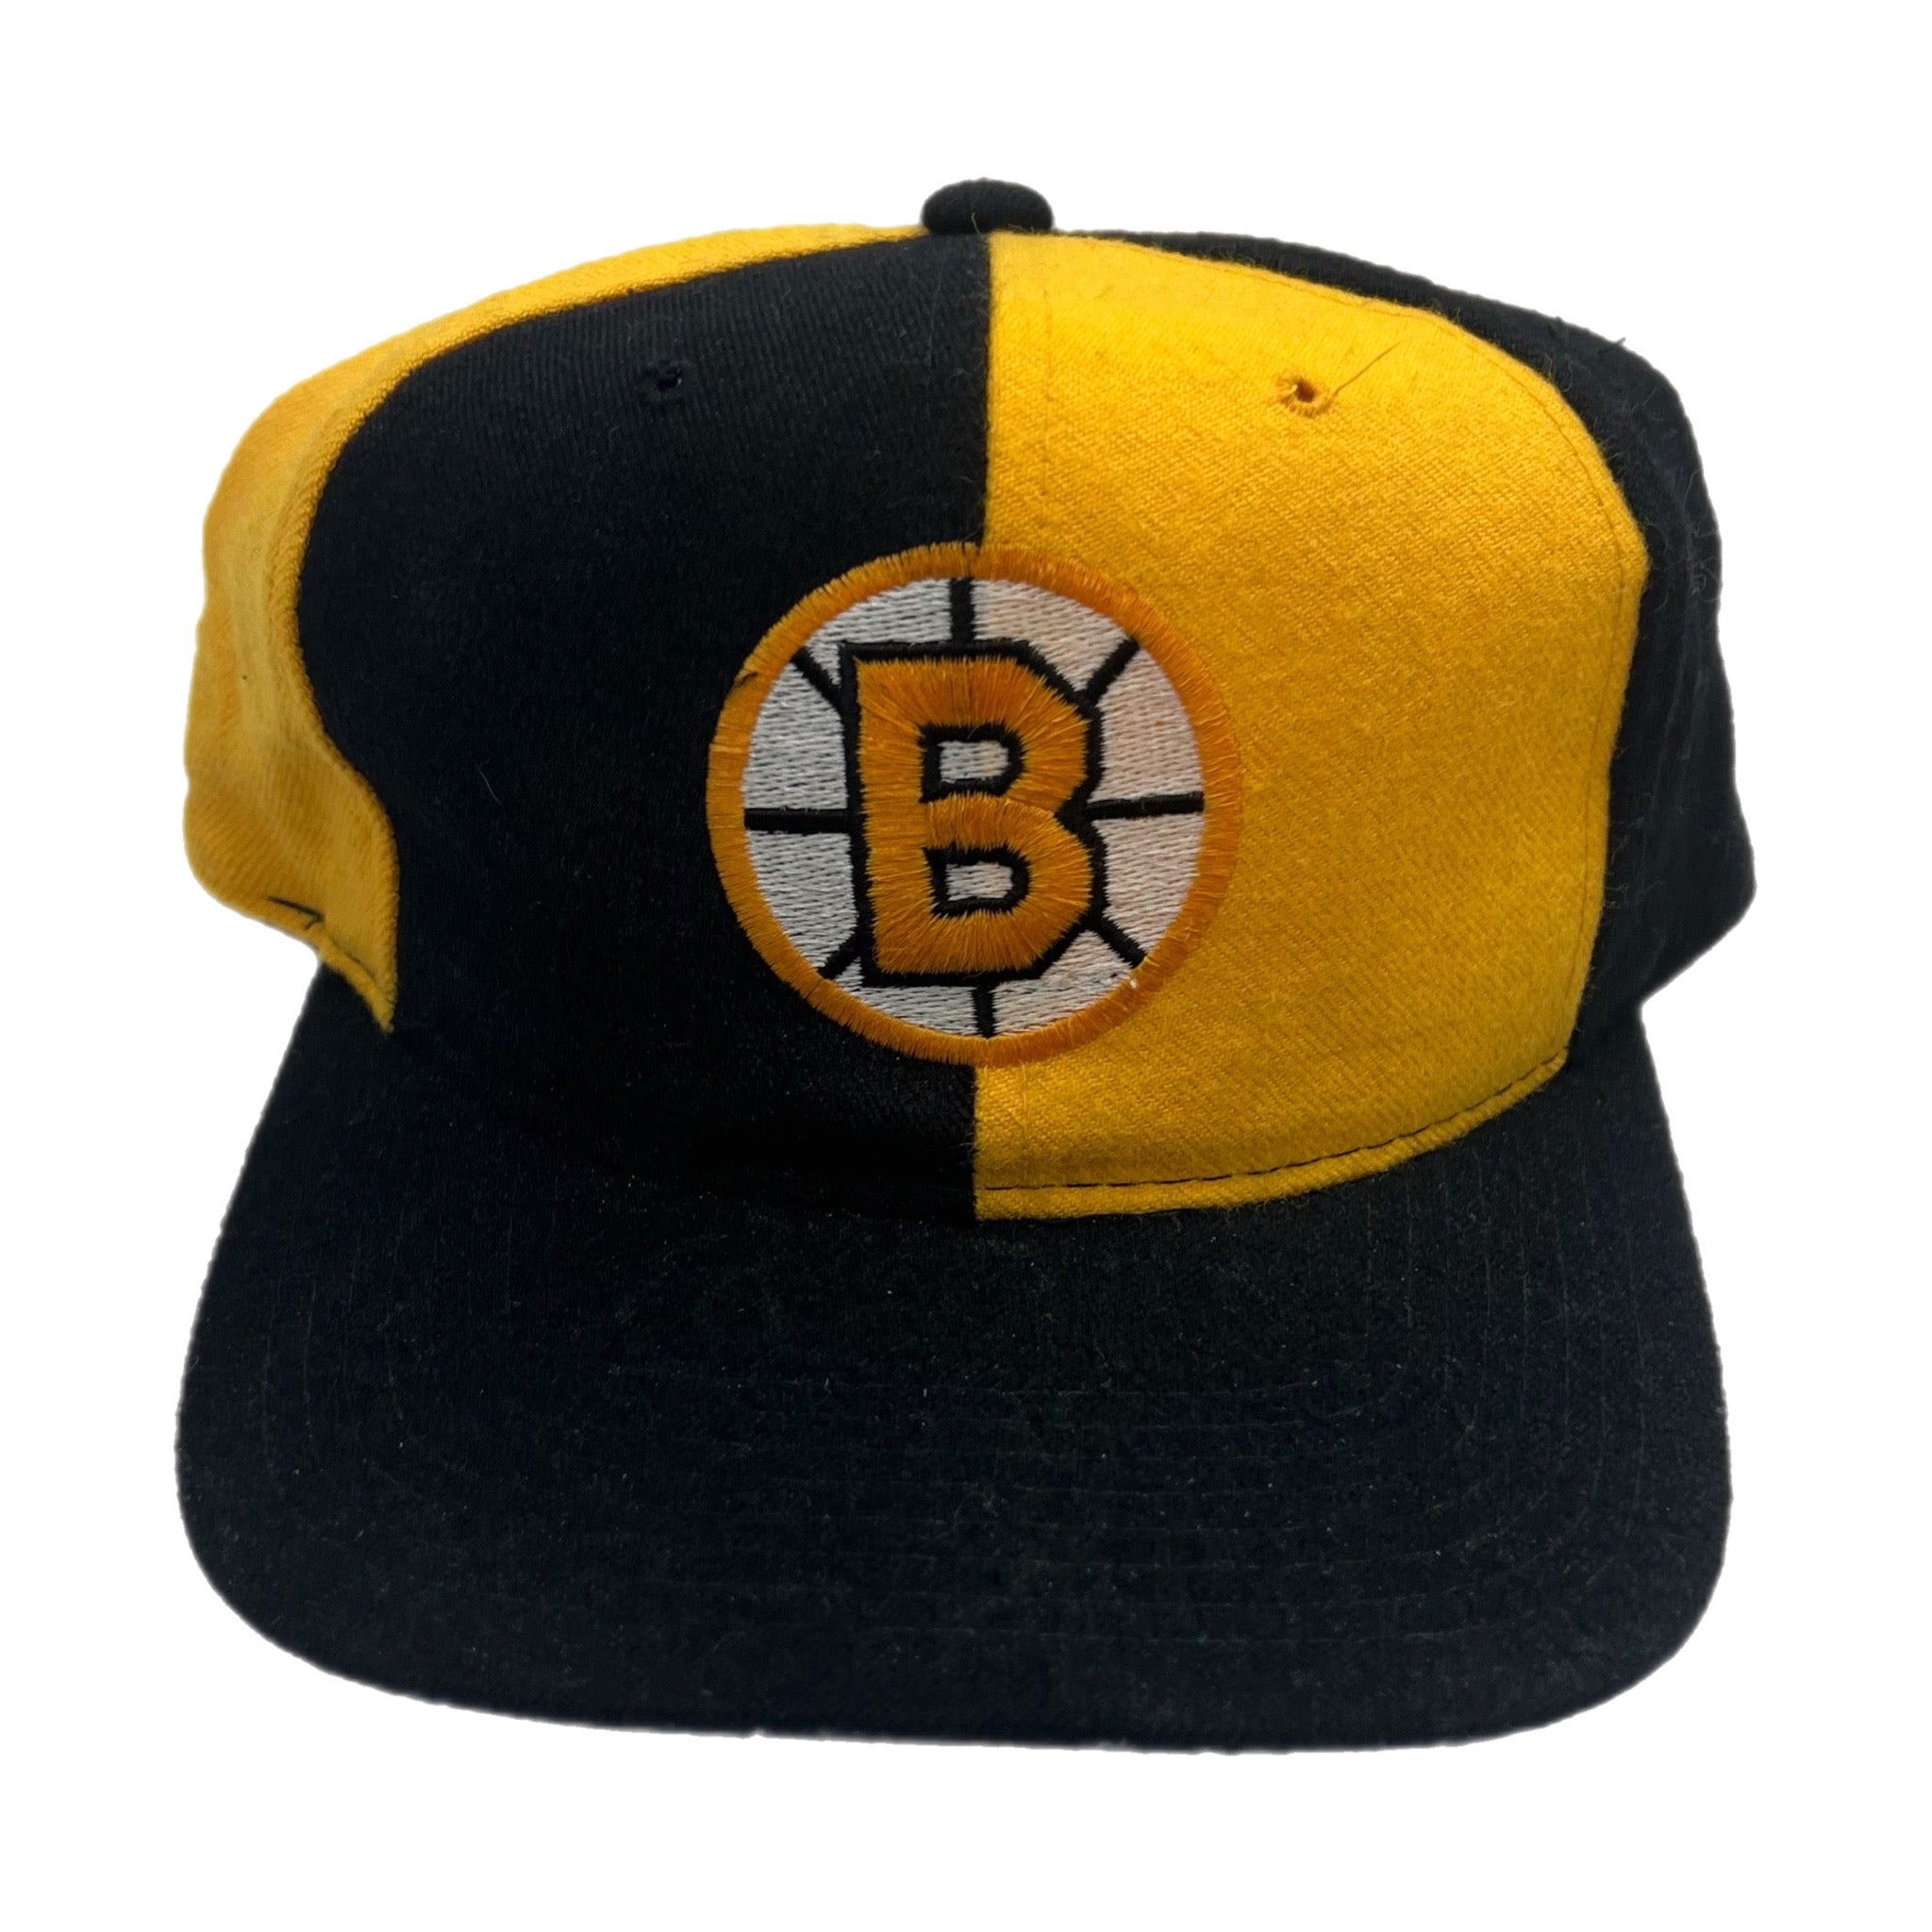 Vintage Boston Bruins Pinwheel Starter Hat Black/Yellow